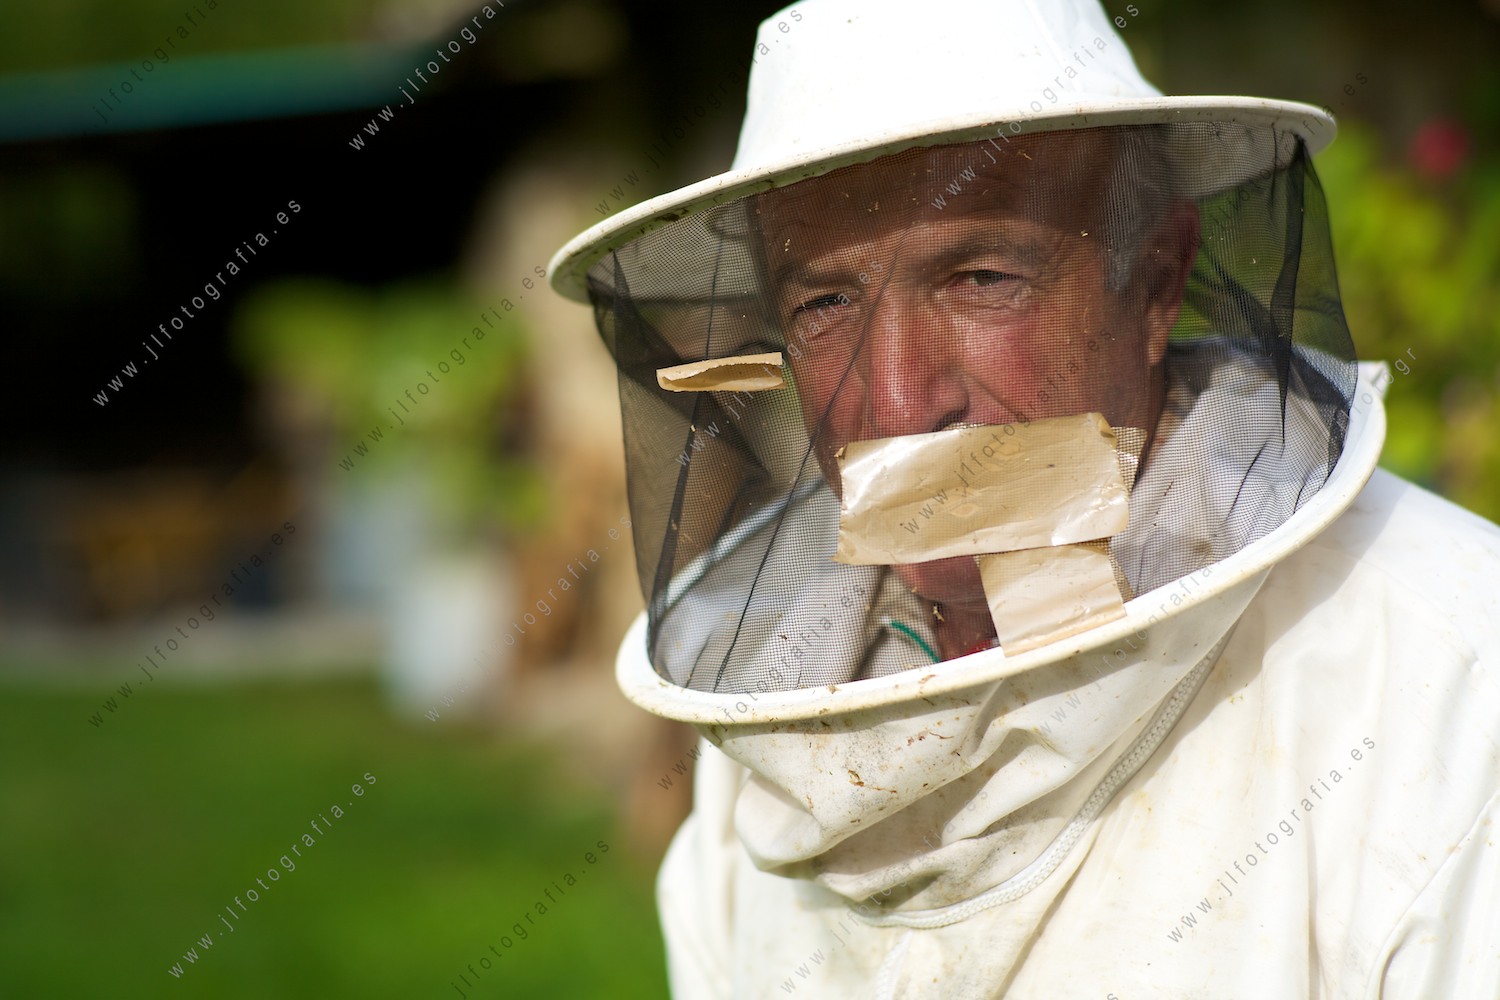 primer plano de un apicultor en el parque natural del Gorbea, posando antes de trabajar en las colmenas